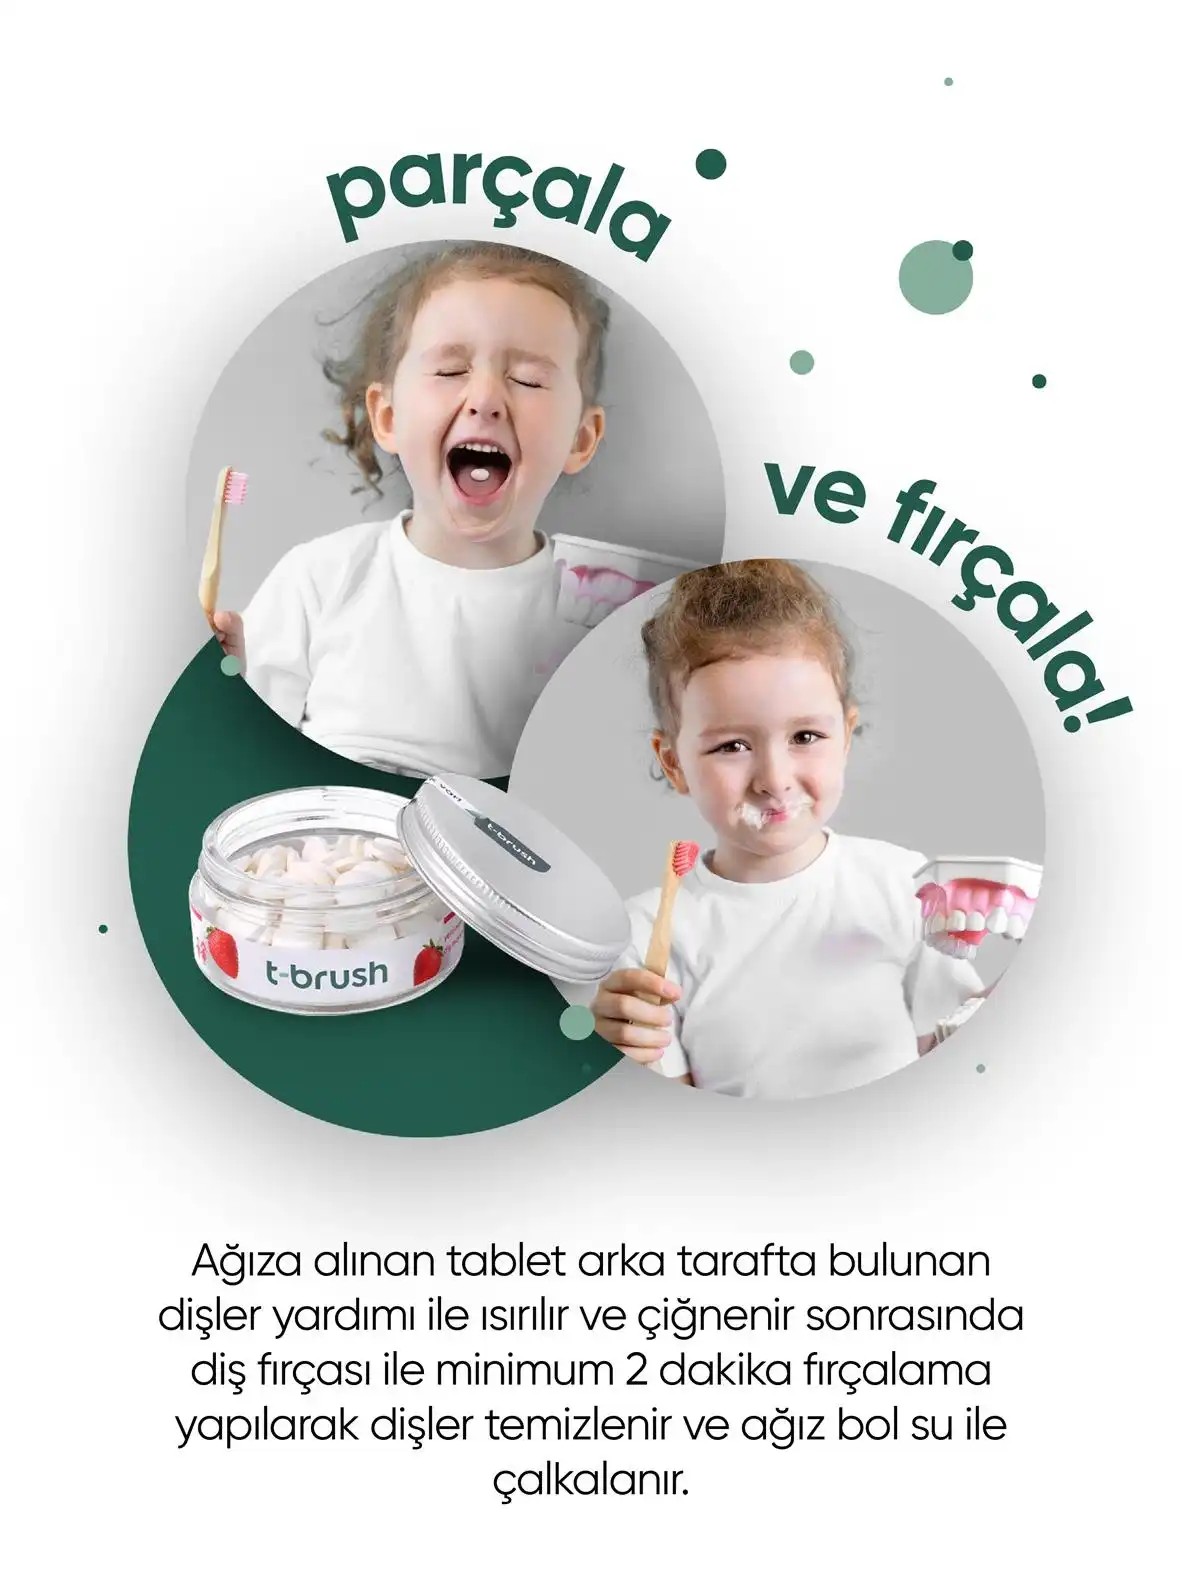 T-Brush Çilek Aromalı Diş Macunu Tableti-Florürsüz.